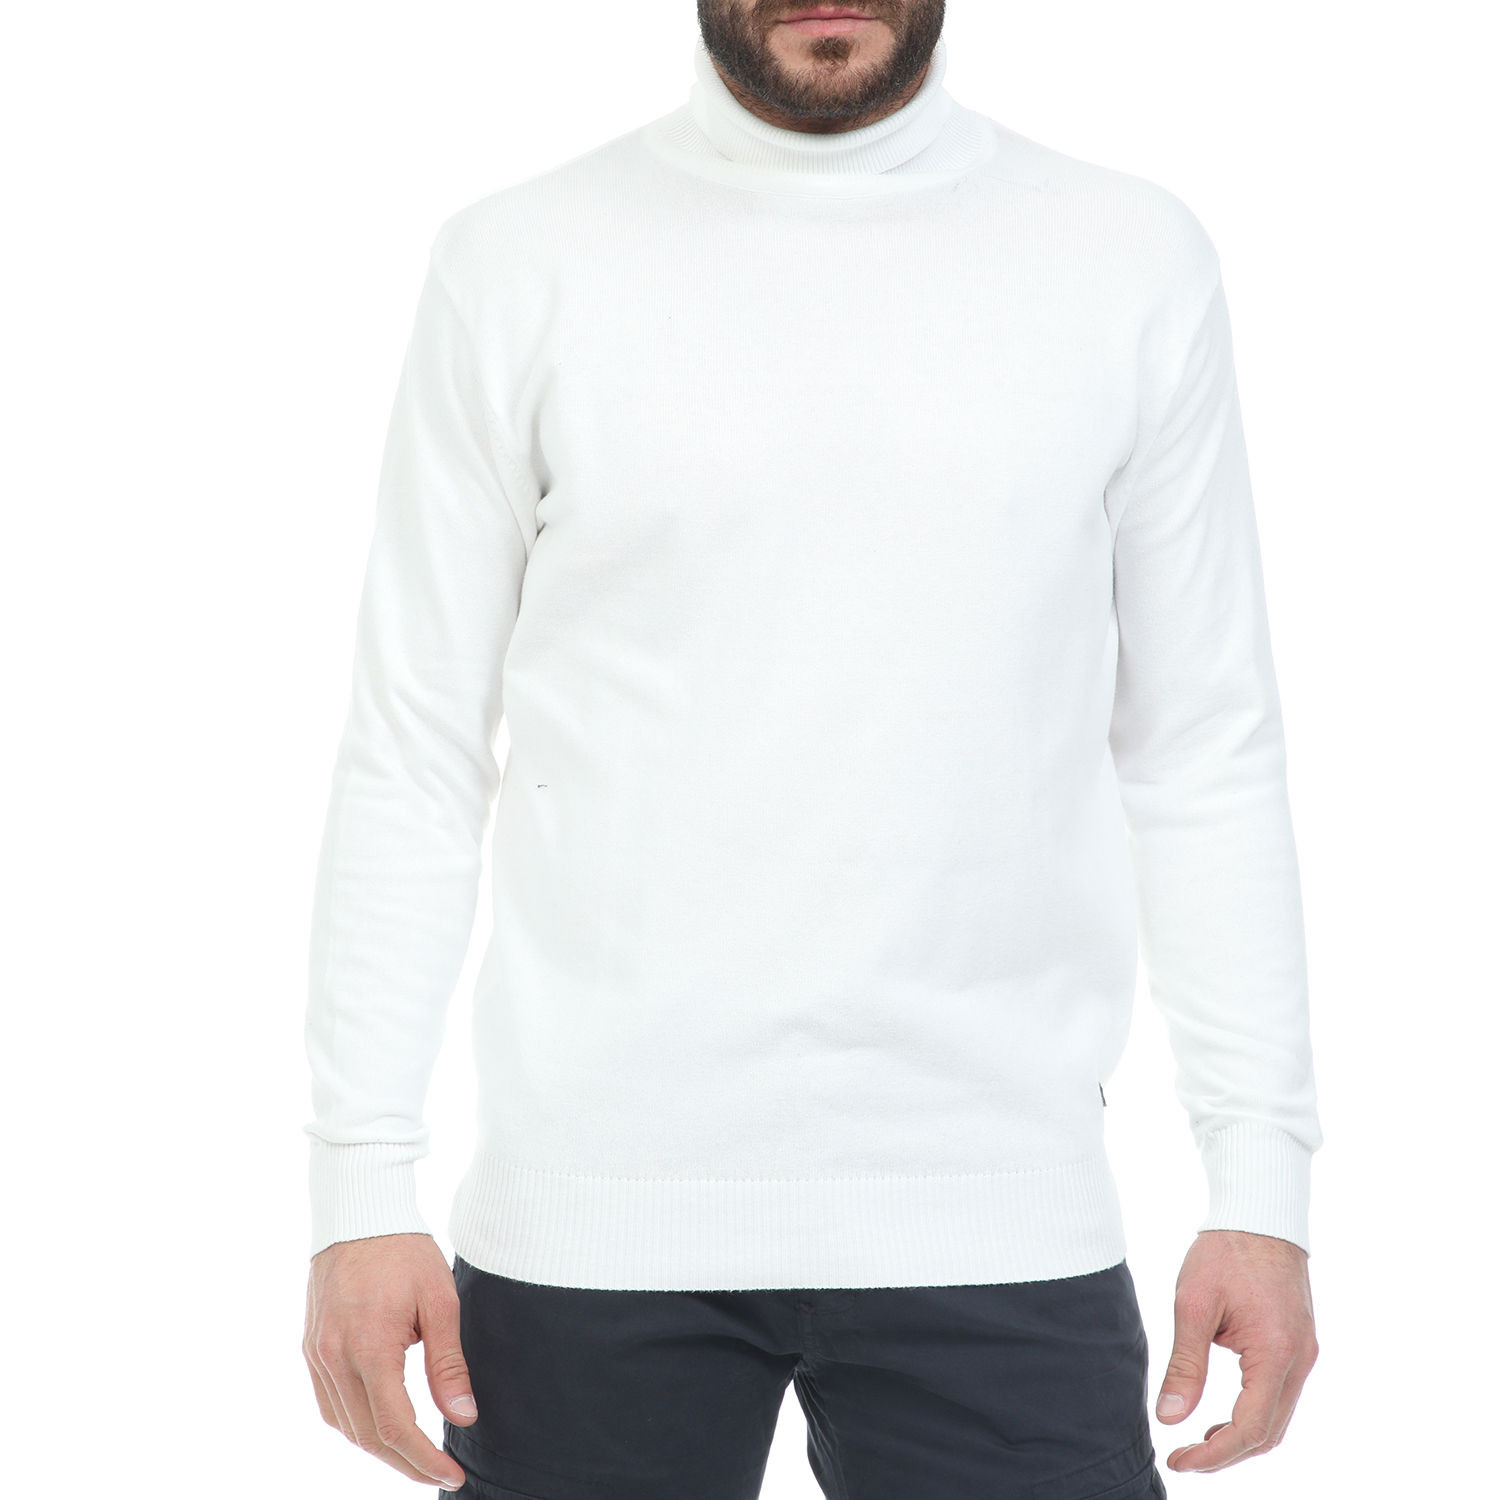 CATAMARAN SAILWEAR Ανδρική πλεκτή μπλούζα ζιβάγκο CATAMARAN SAILWEAR λευκή (μεγάλα μεγέθη)